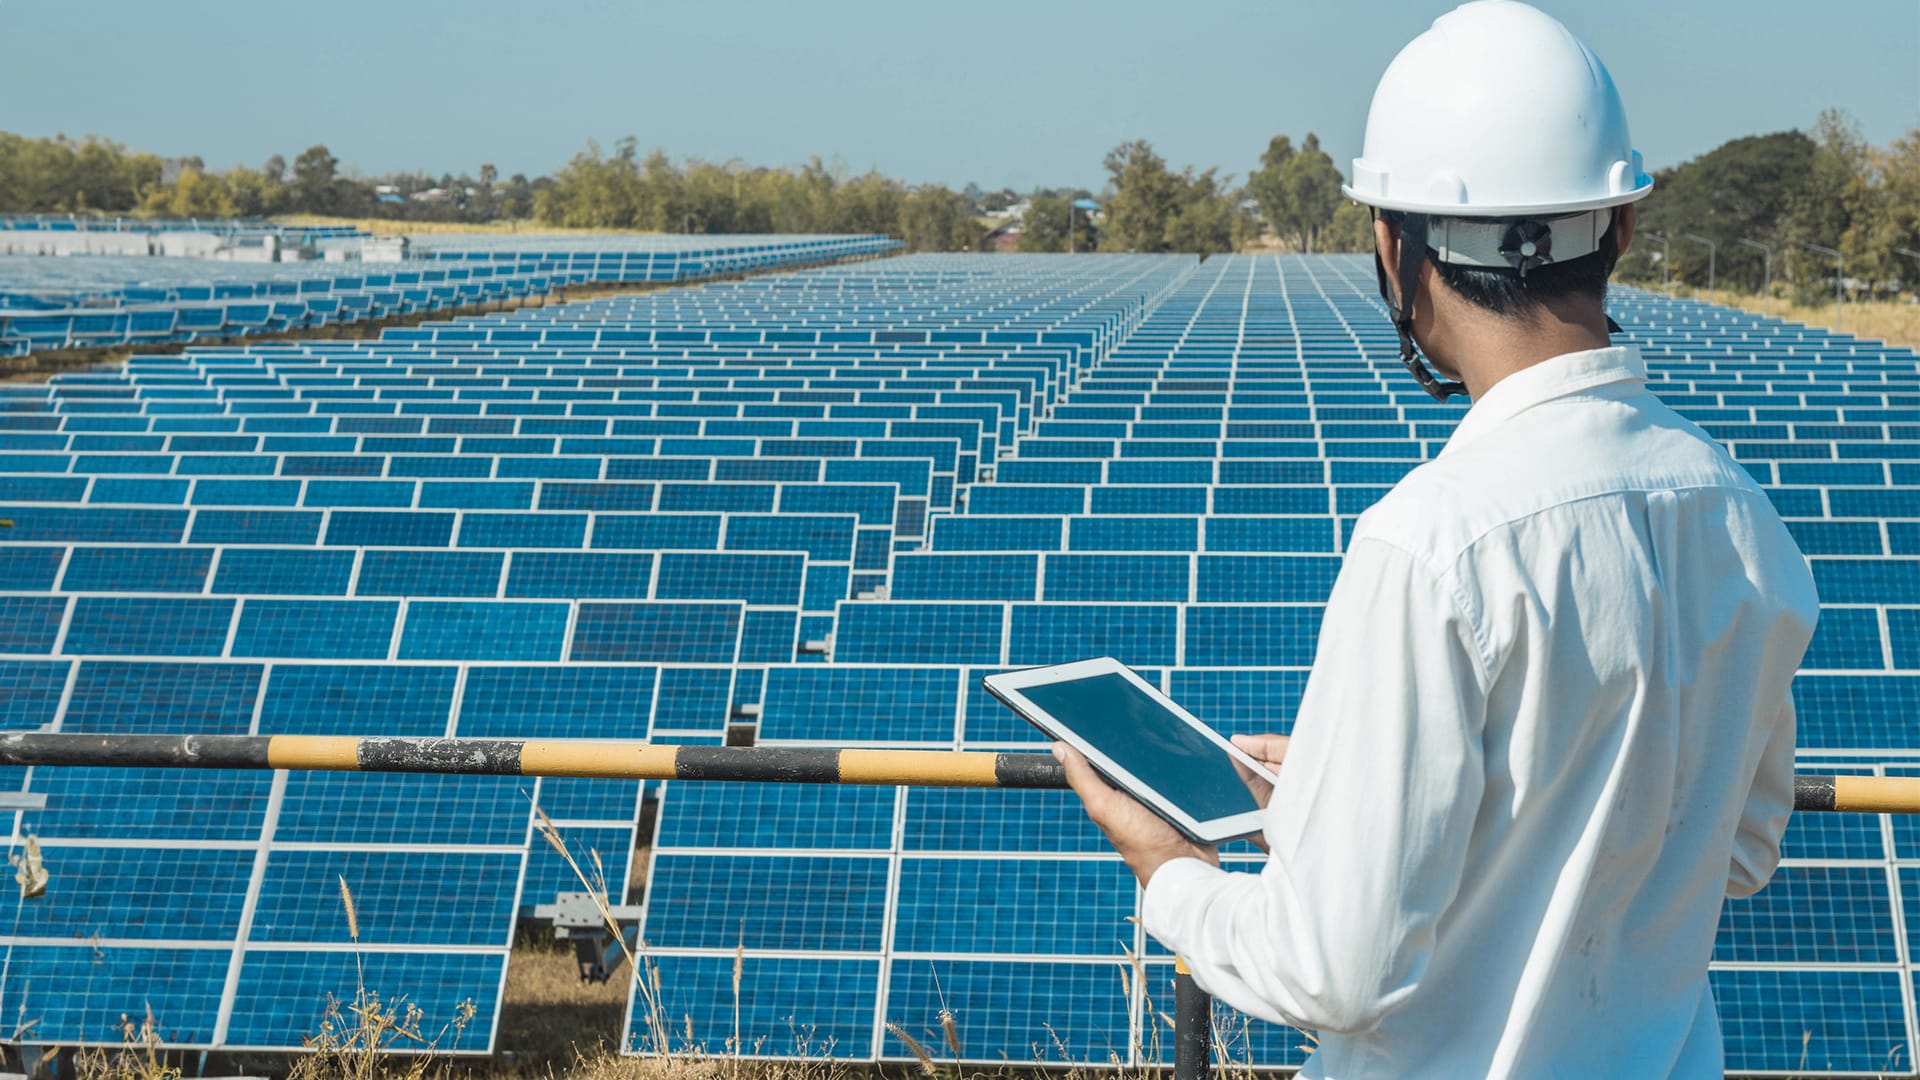 Electrum buduje farmę solarną o mocy 200 MW dla EDP Renewables w polskim zagłębiu fotowoltaicznym